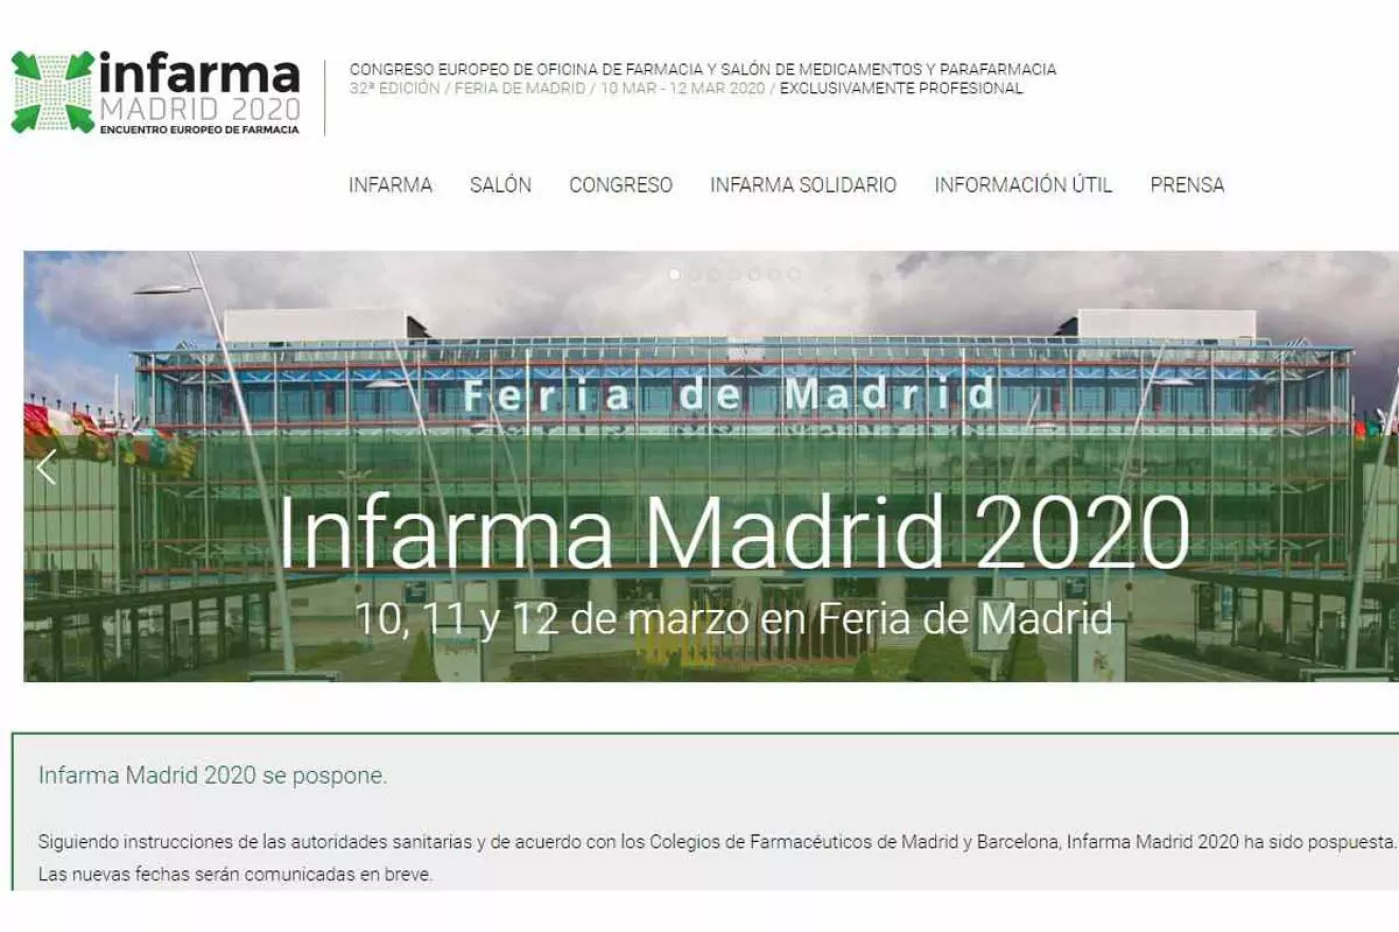 Finalmente Infarma 2020, que tenía previsto celebrarse en Madrid del 10 del 12 de marzo, se ha aplazado debido al brote de coronavirus.